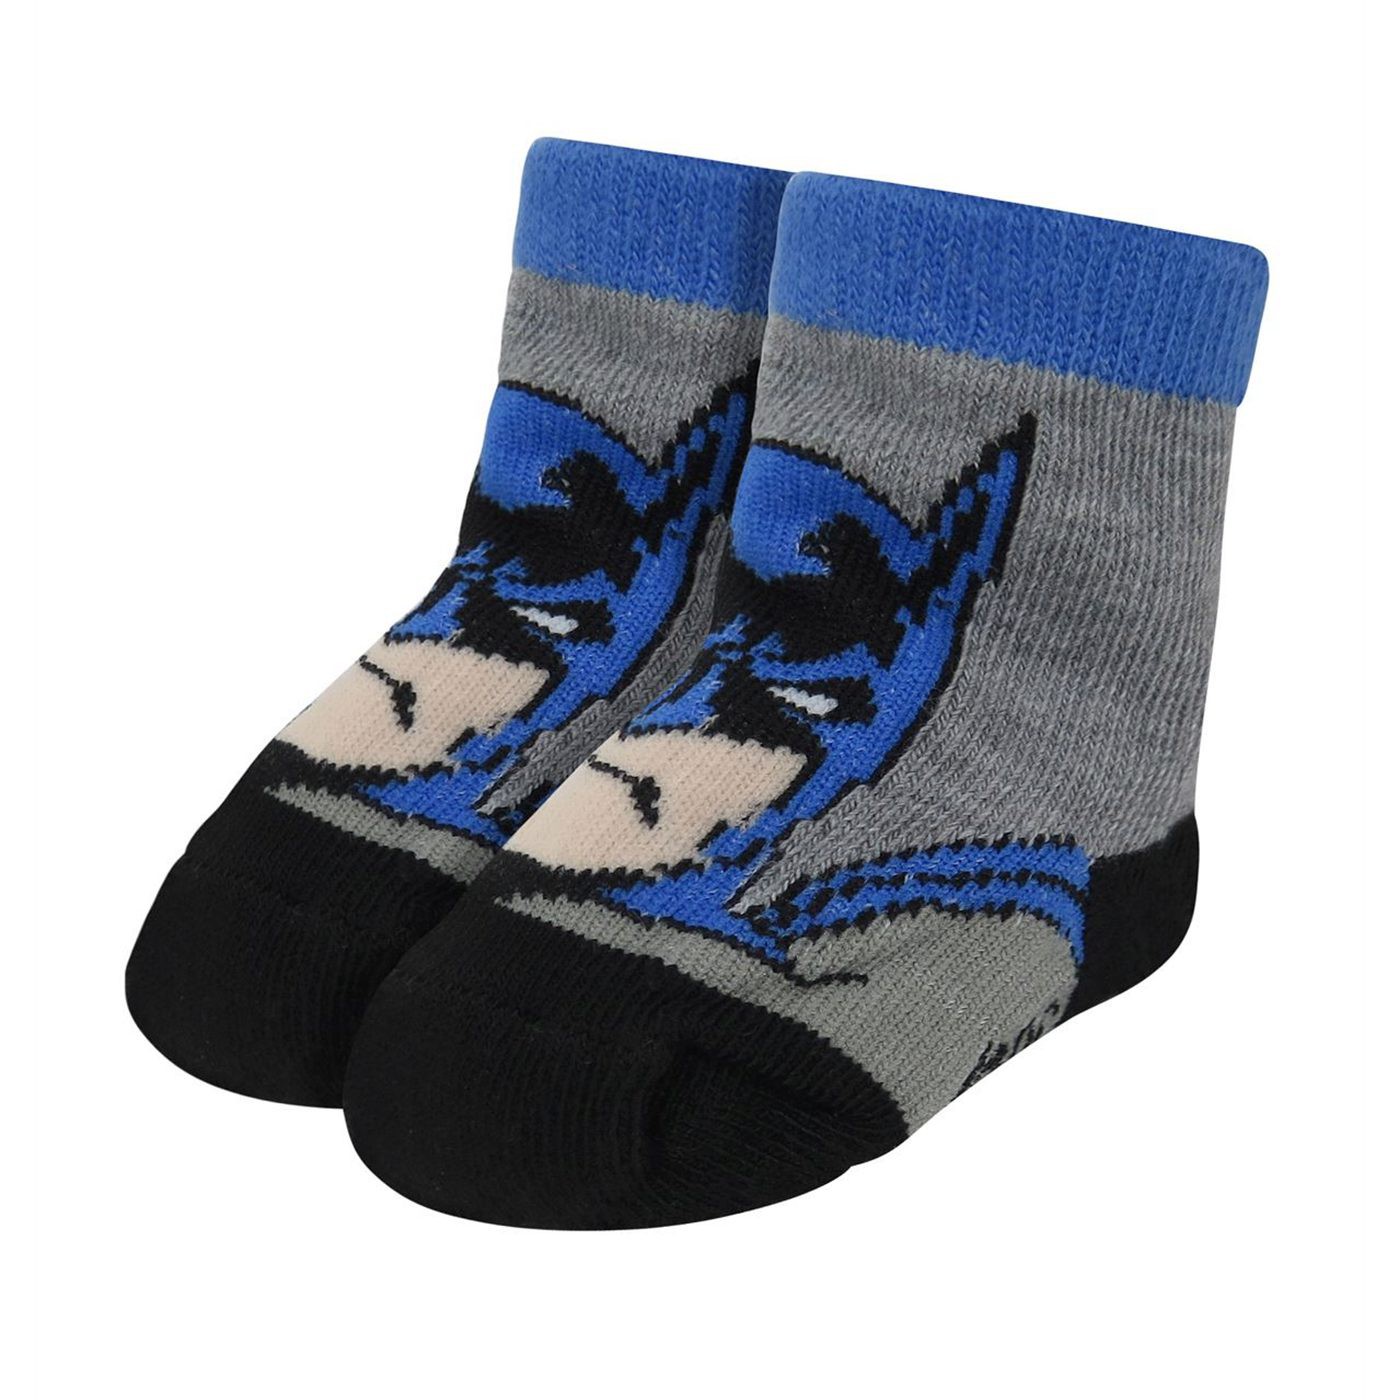 Batman Classic Infant Socks 6-Pack